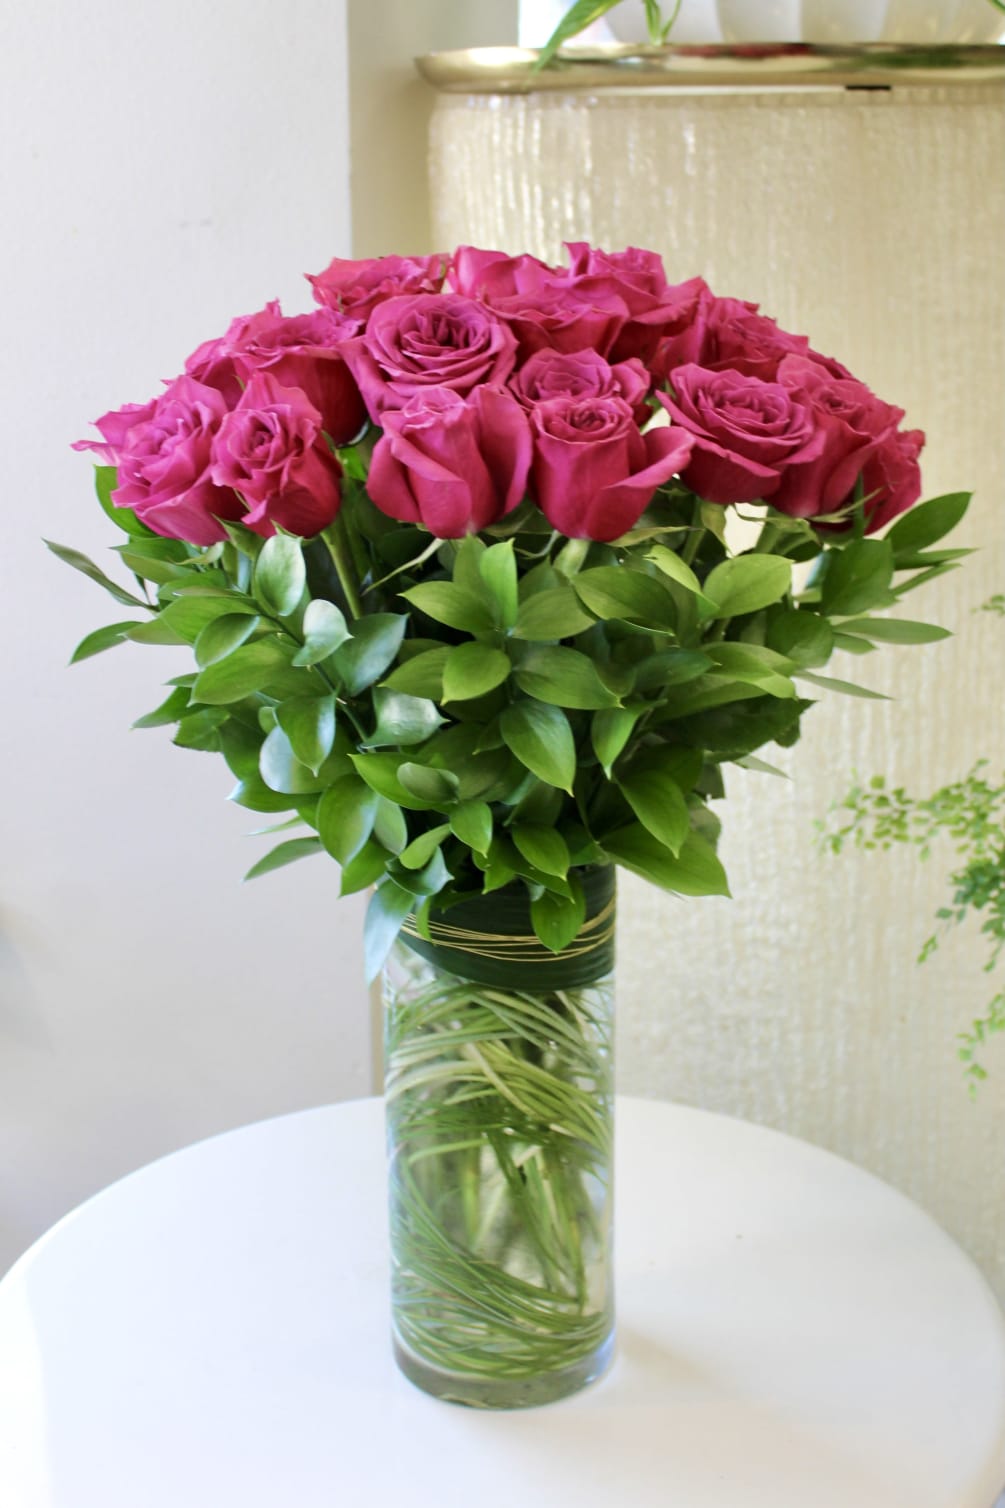 24 purple-toned roses are designed all around in this classic rose arrangement.